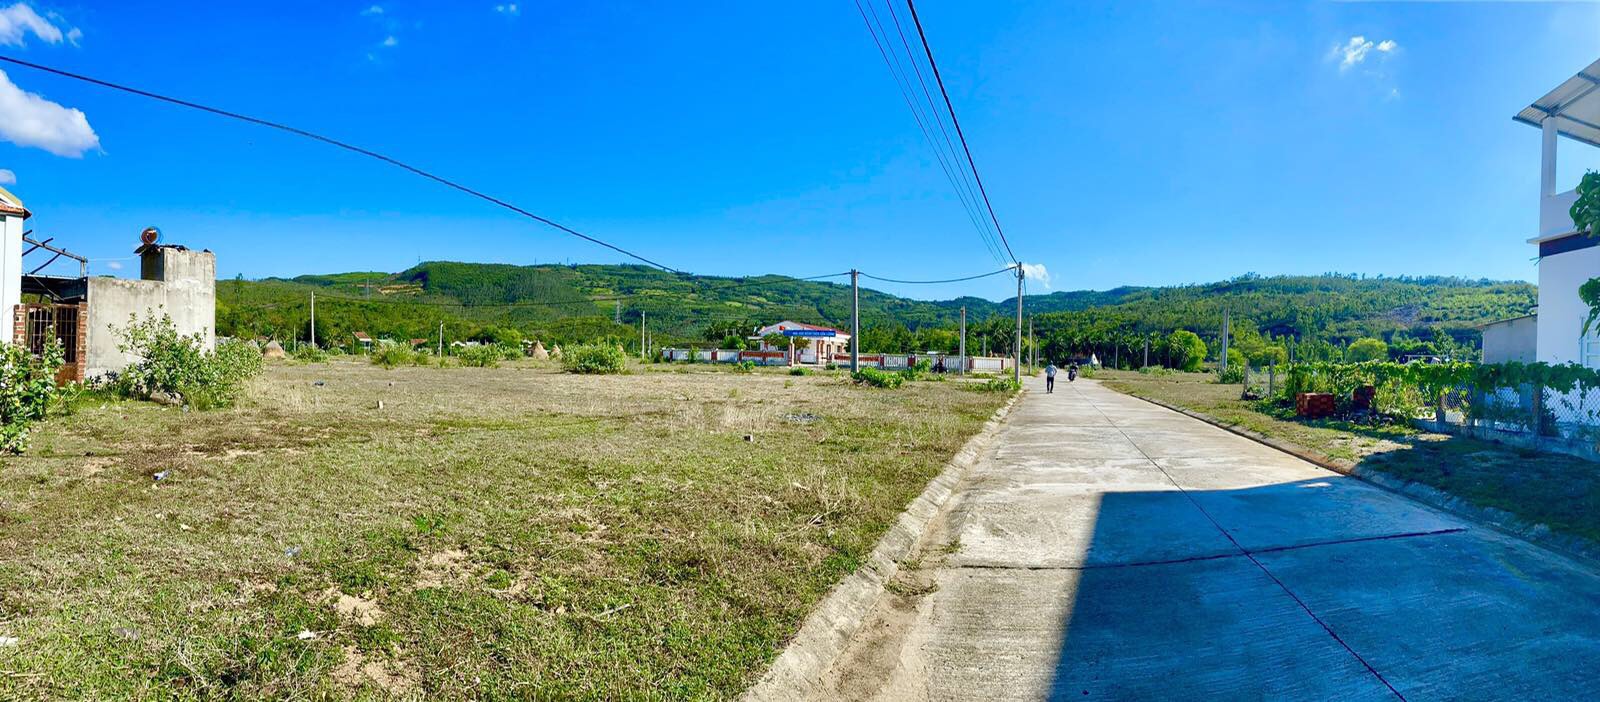 Bán lô đất ngay quốc lộ 1A Tuy An Phú Yên cách biển 4km giá chỉ 3 triệu/m2 2